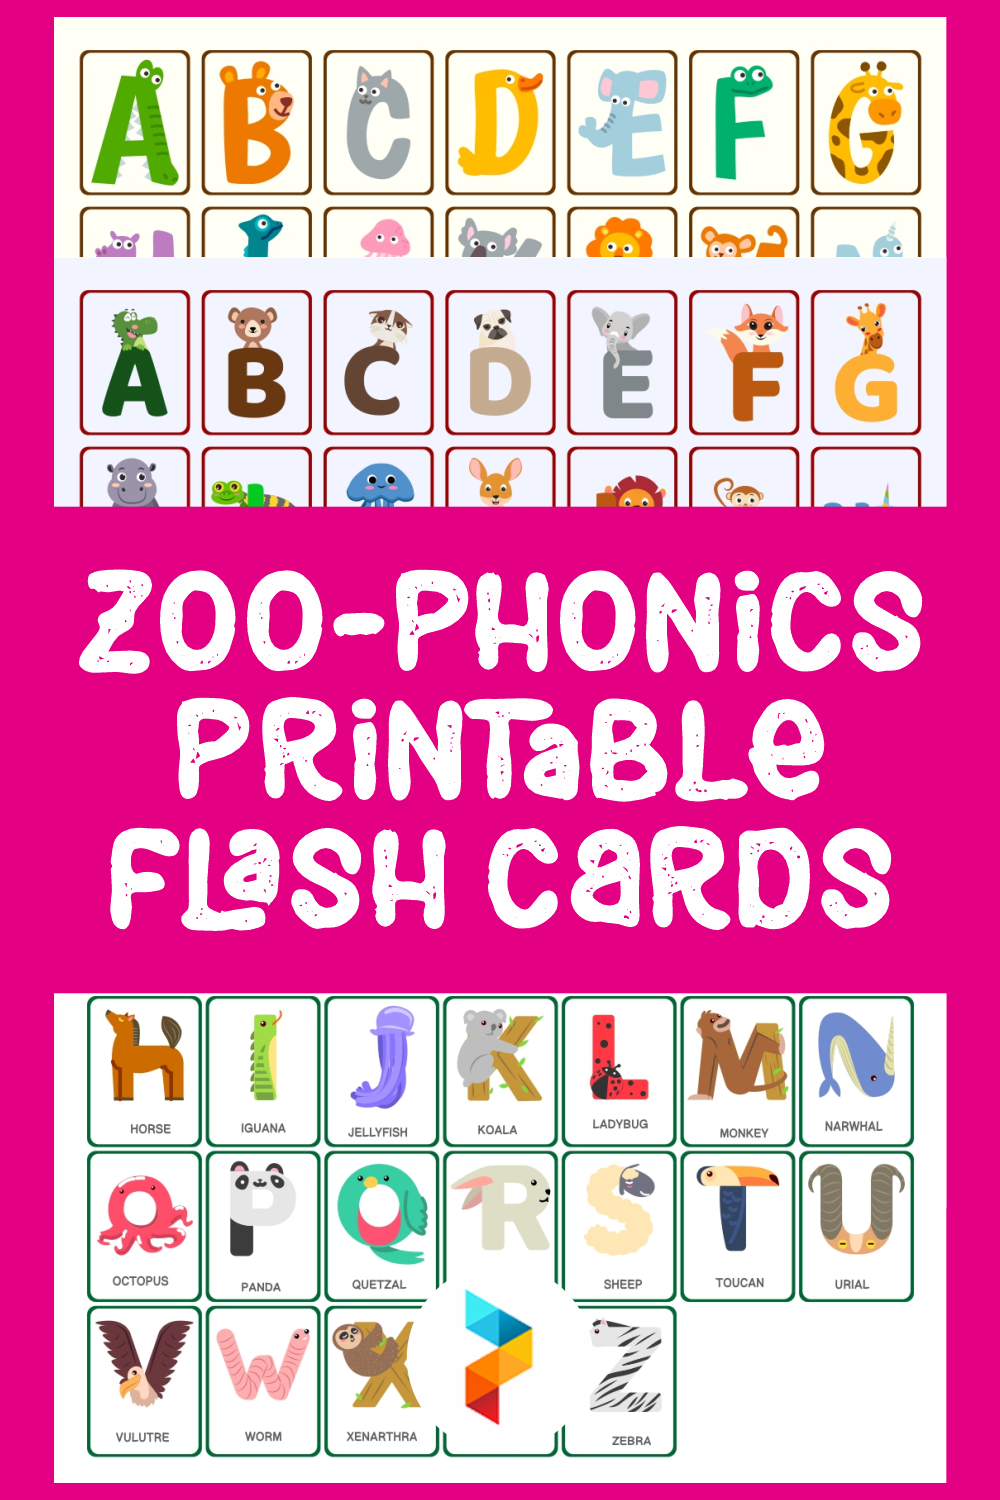 Zoo Phonics Printables Printable Word Searches